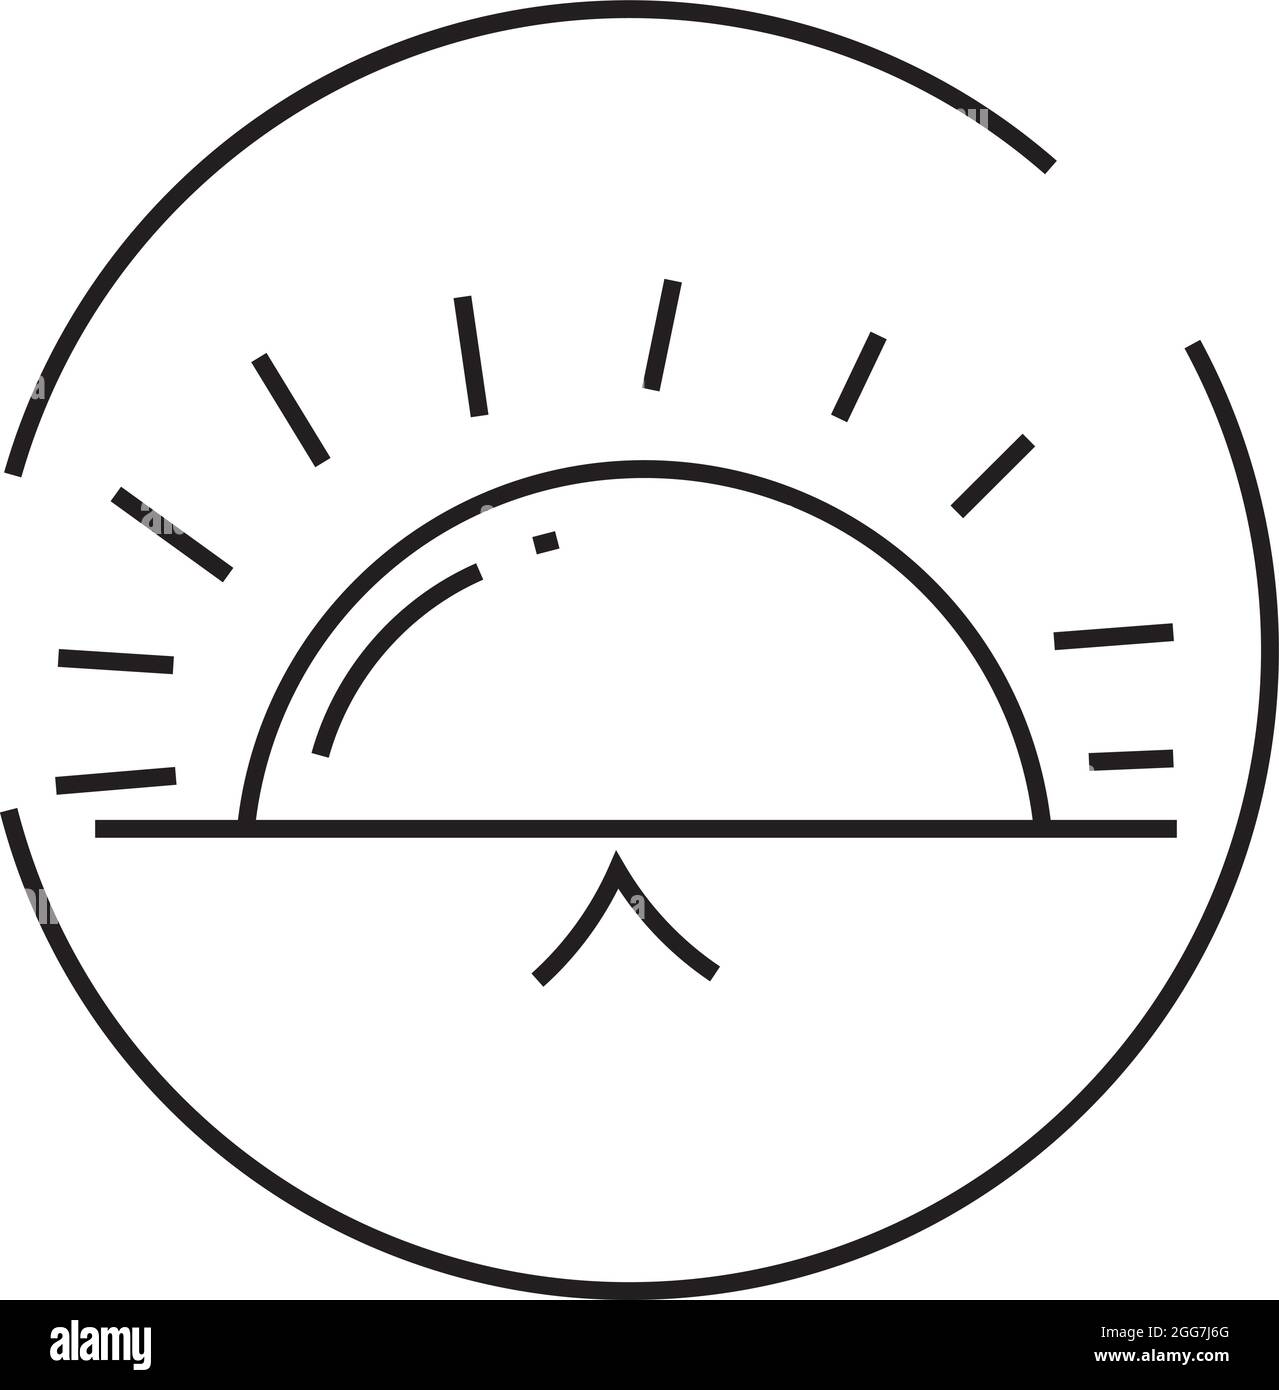 Untergehende Sonne, Symboldarstellung, Vektor auf weißem Hintergrund Stock Vektor